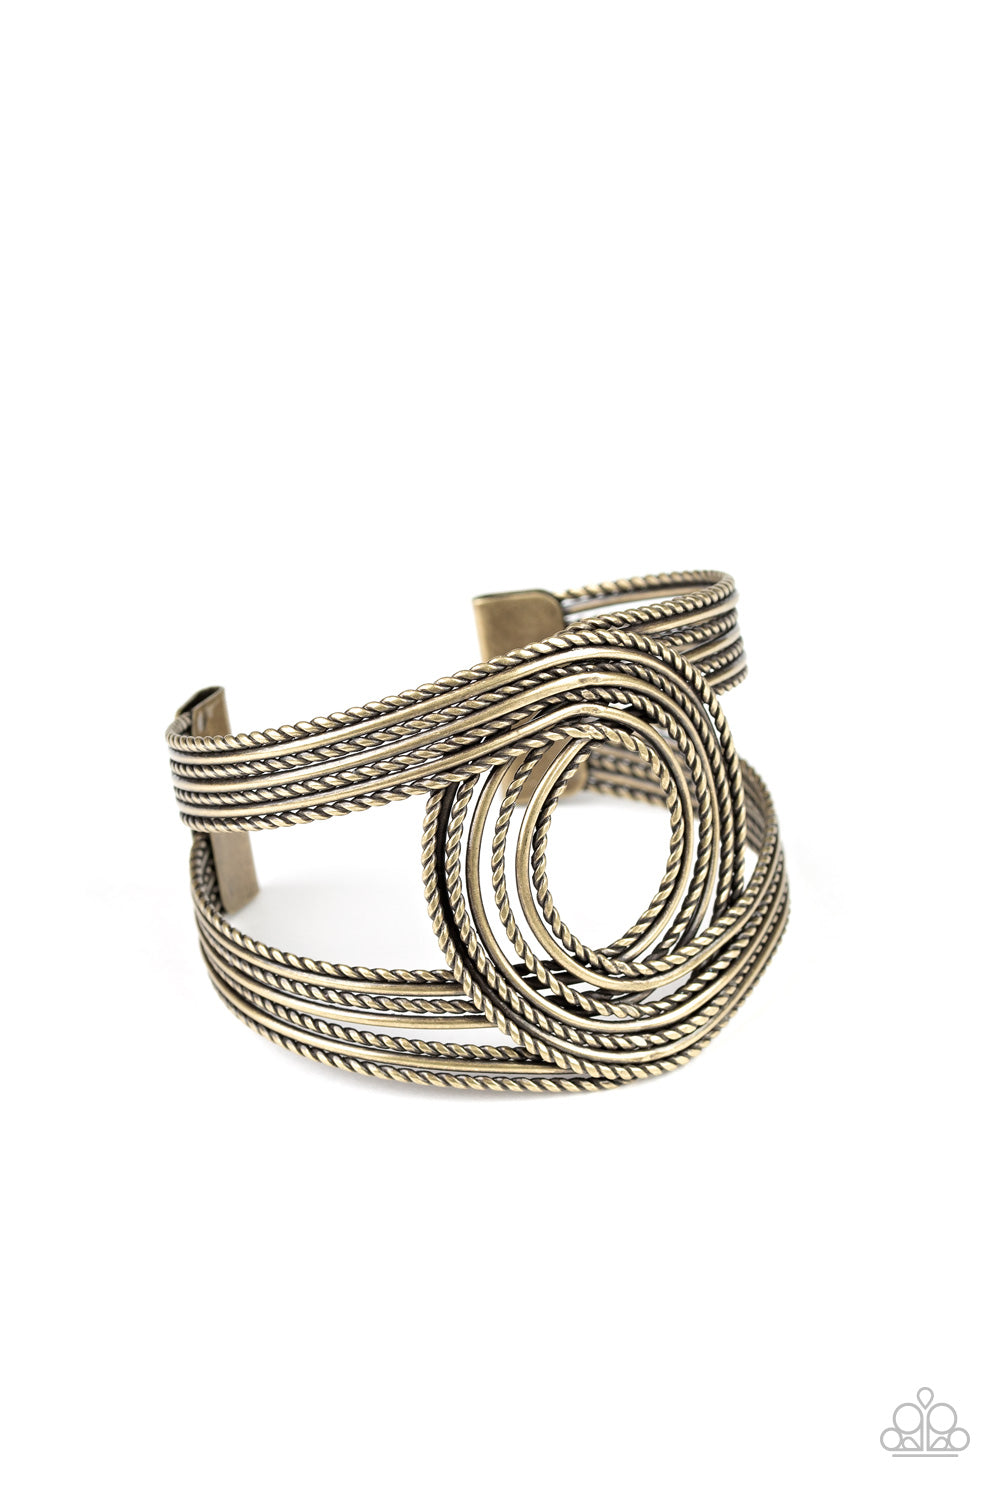 Rustic Coils - Brass cuff bracelet